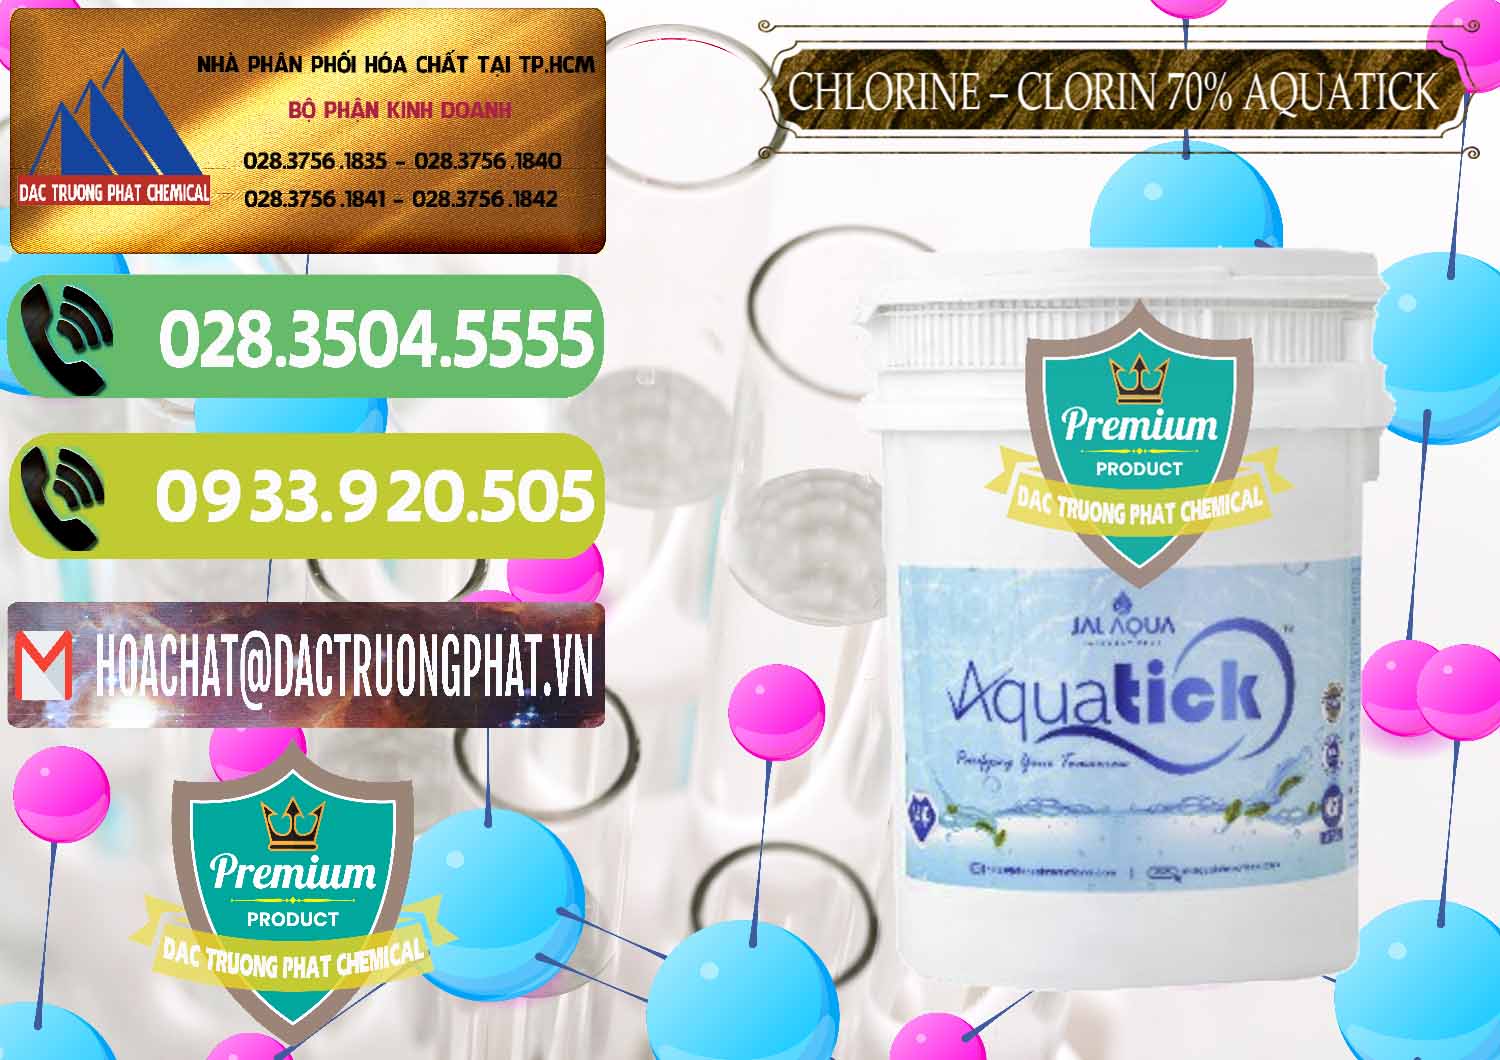 Cty phân phối & bán Chlorine – Clorin 70% Aquatick Thùng Cao Jal Aqua Ấn Độ India - 0237 - Công ty nhập khẩu và phân phối hóa chất tại TP.HCM - hoachatmientay.vn